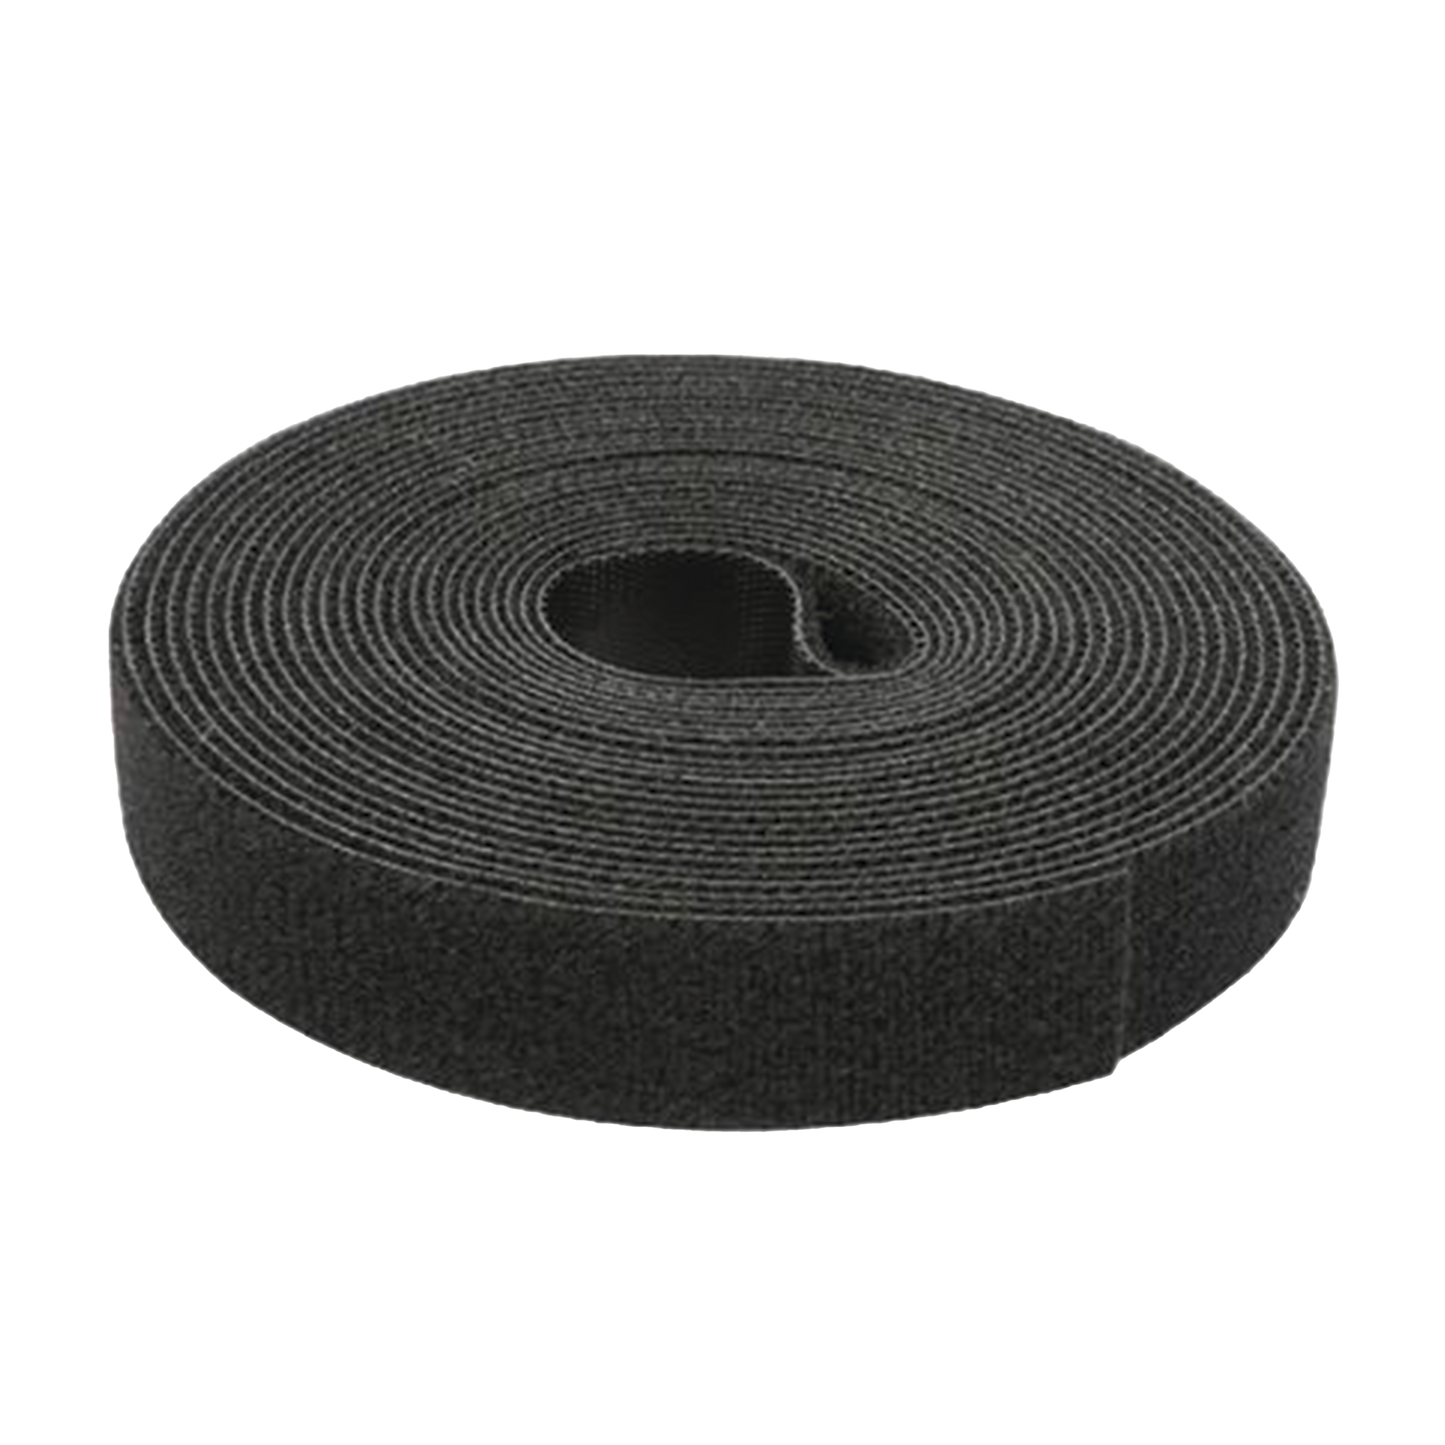 Cinta tipo Velcro de Color Negro, Espalda con Espalda (Gancho y Bucle) de 1.6 cm x 25 metros.